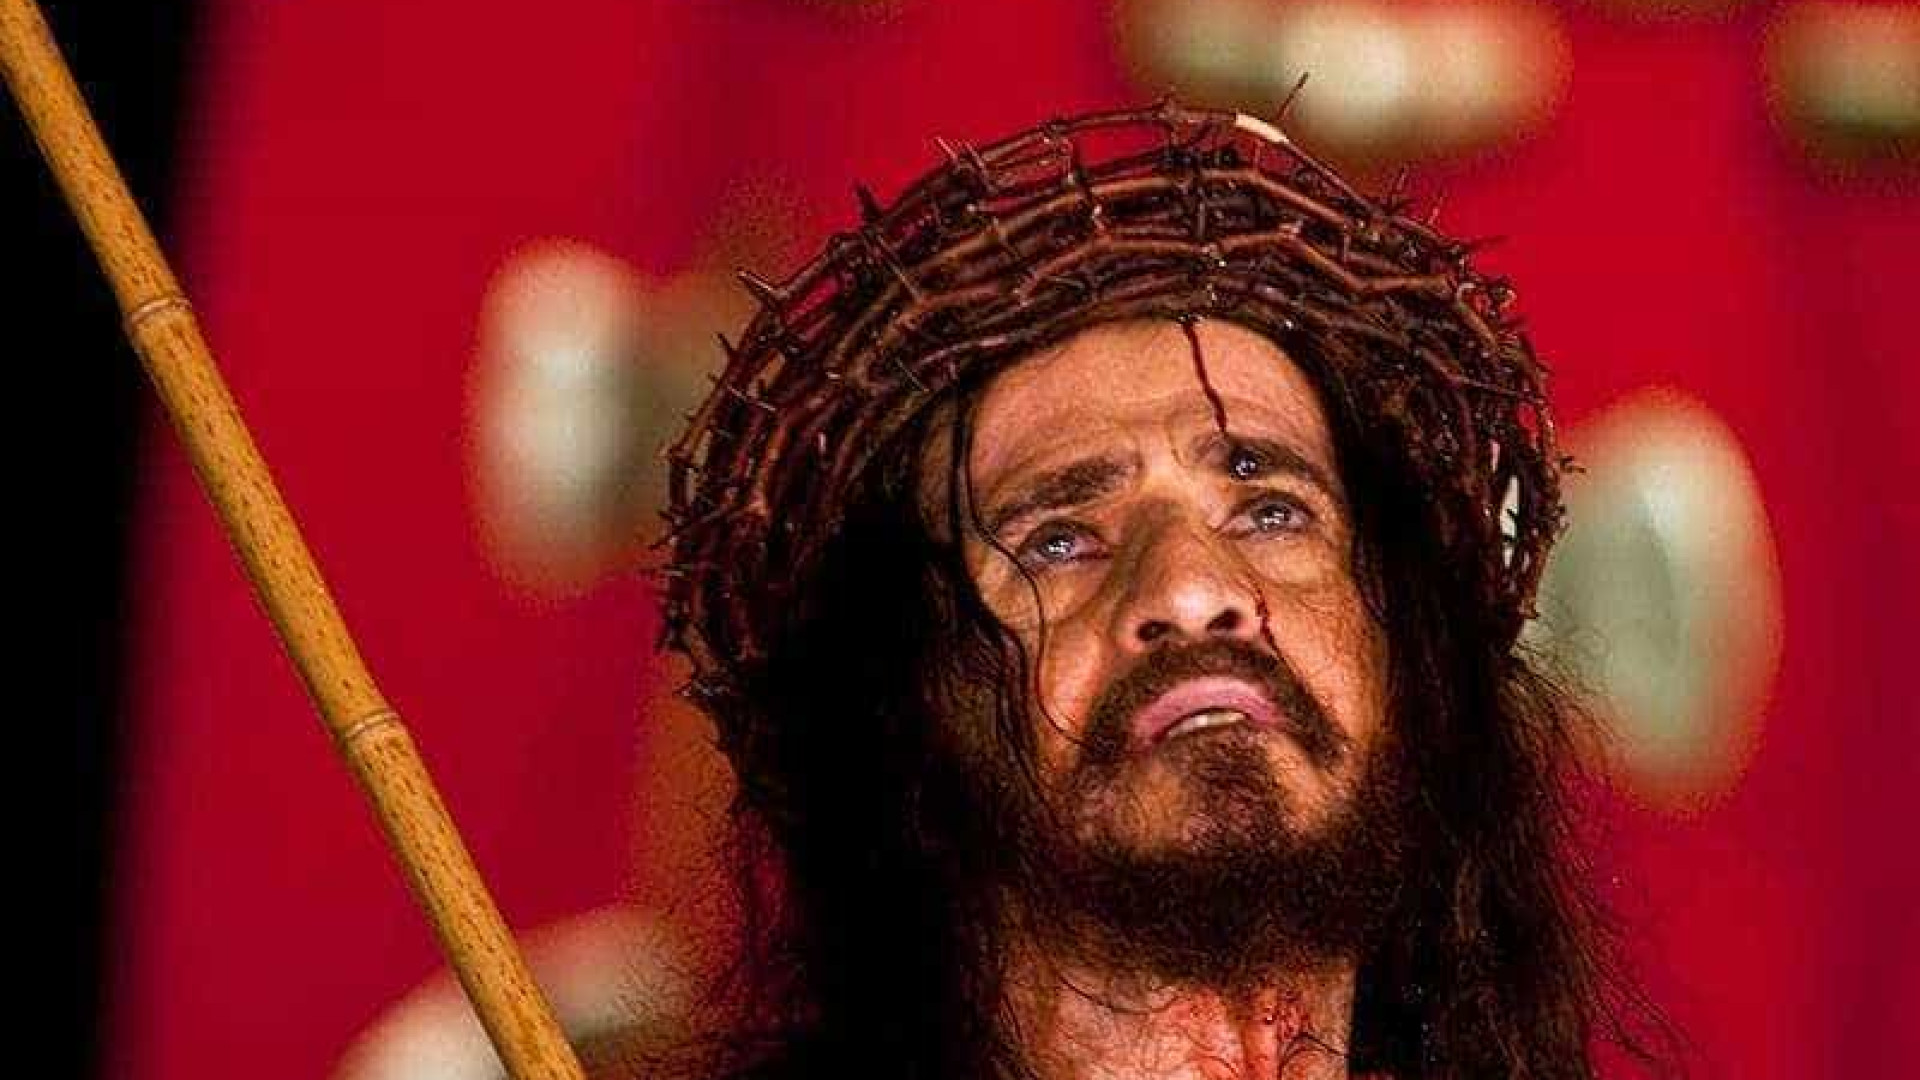 Morre o ator JosÃ© Pimentel, famoso por interpretar Jesus por 40 anos